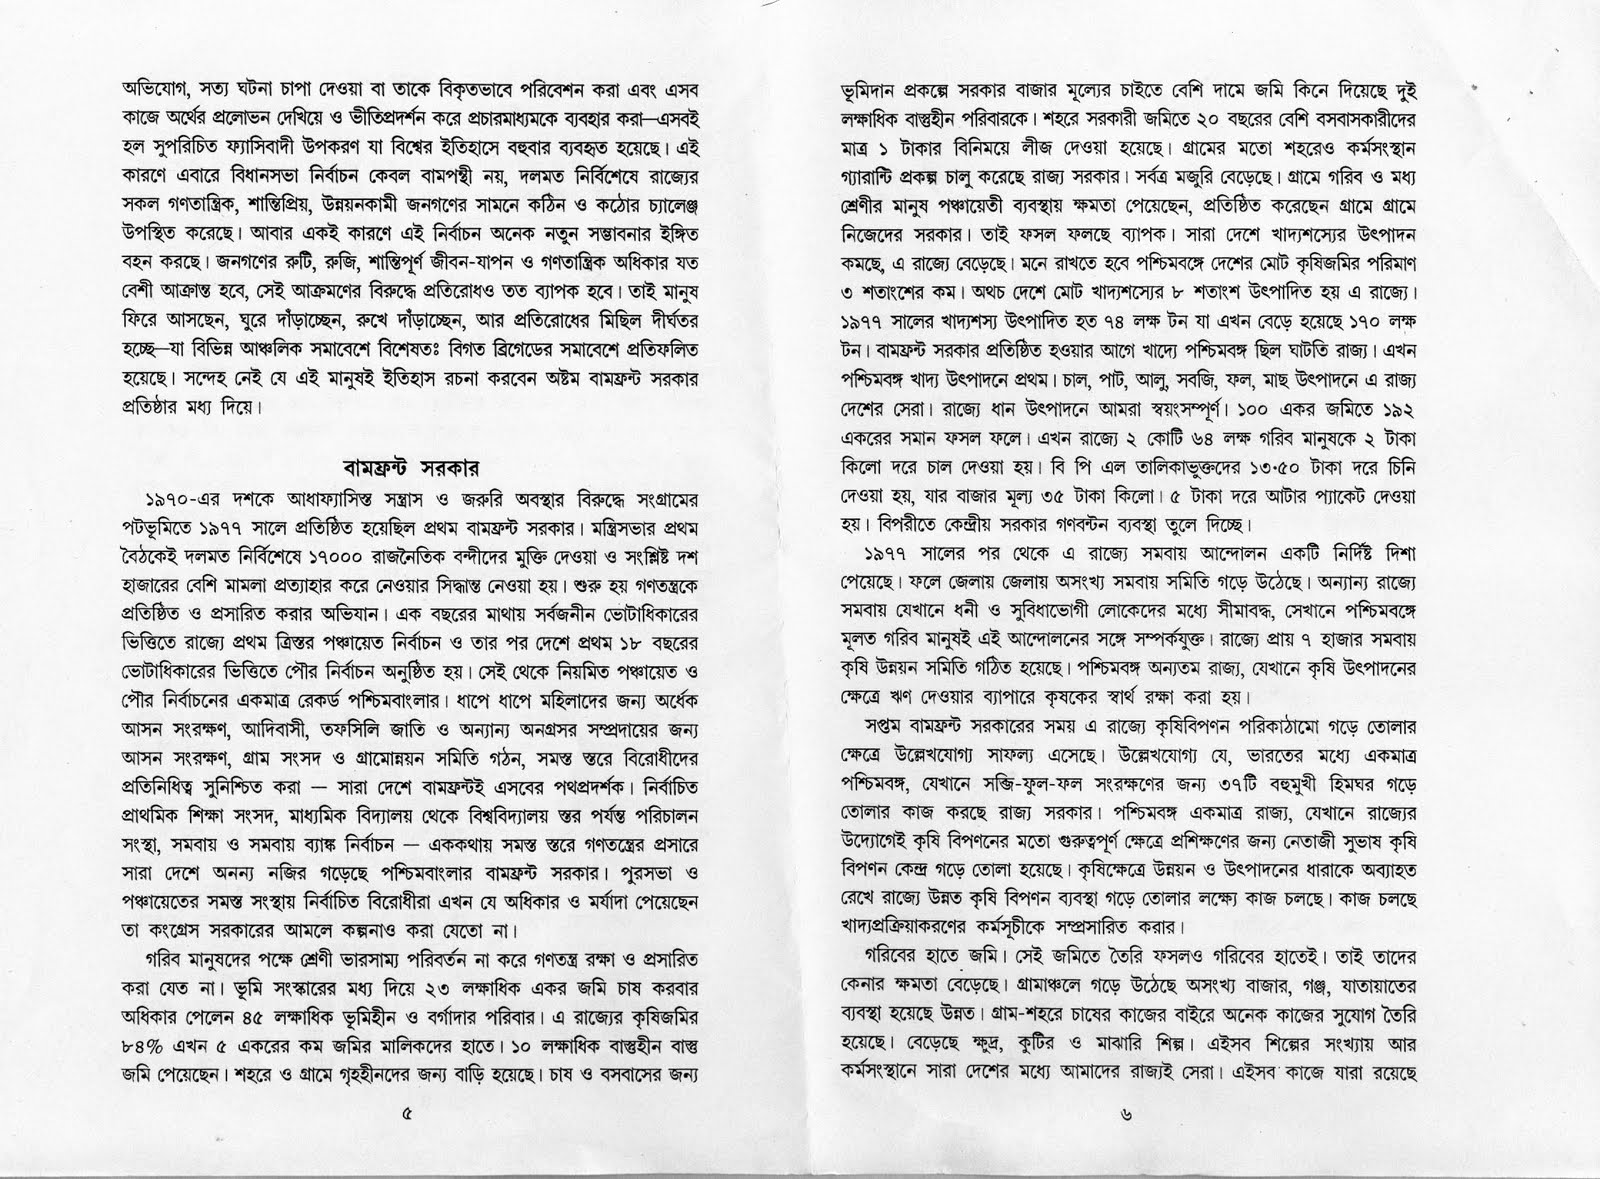 Communist Manifesto In Bengali.pdf